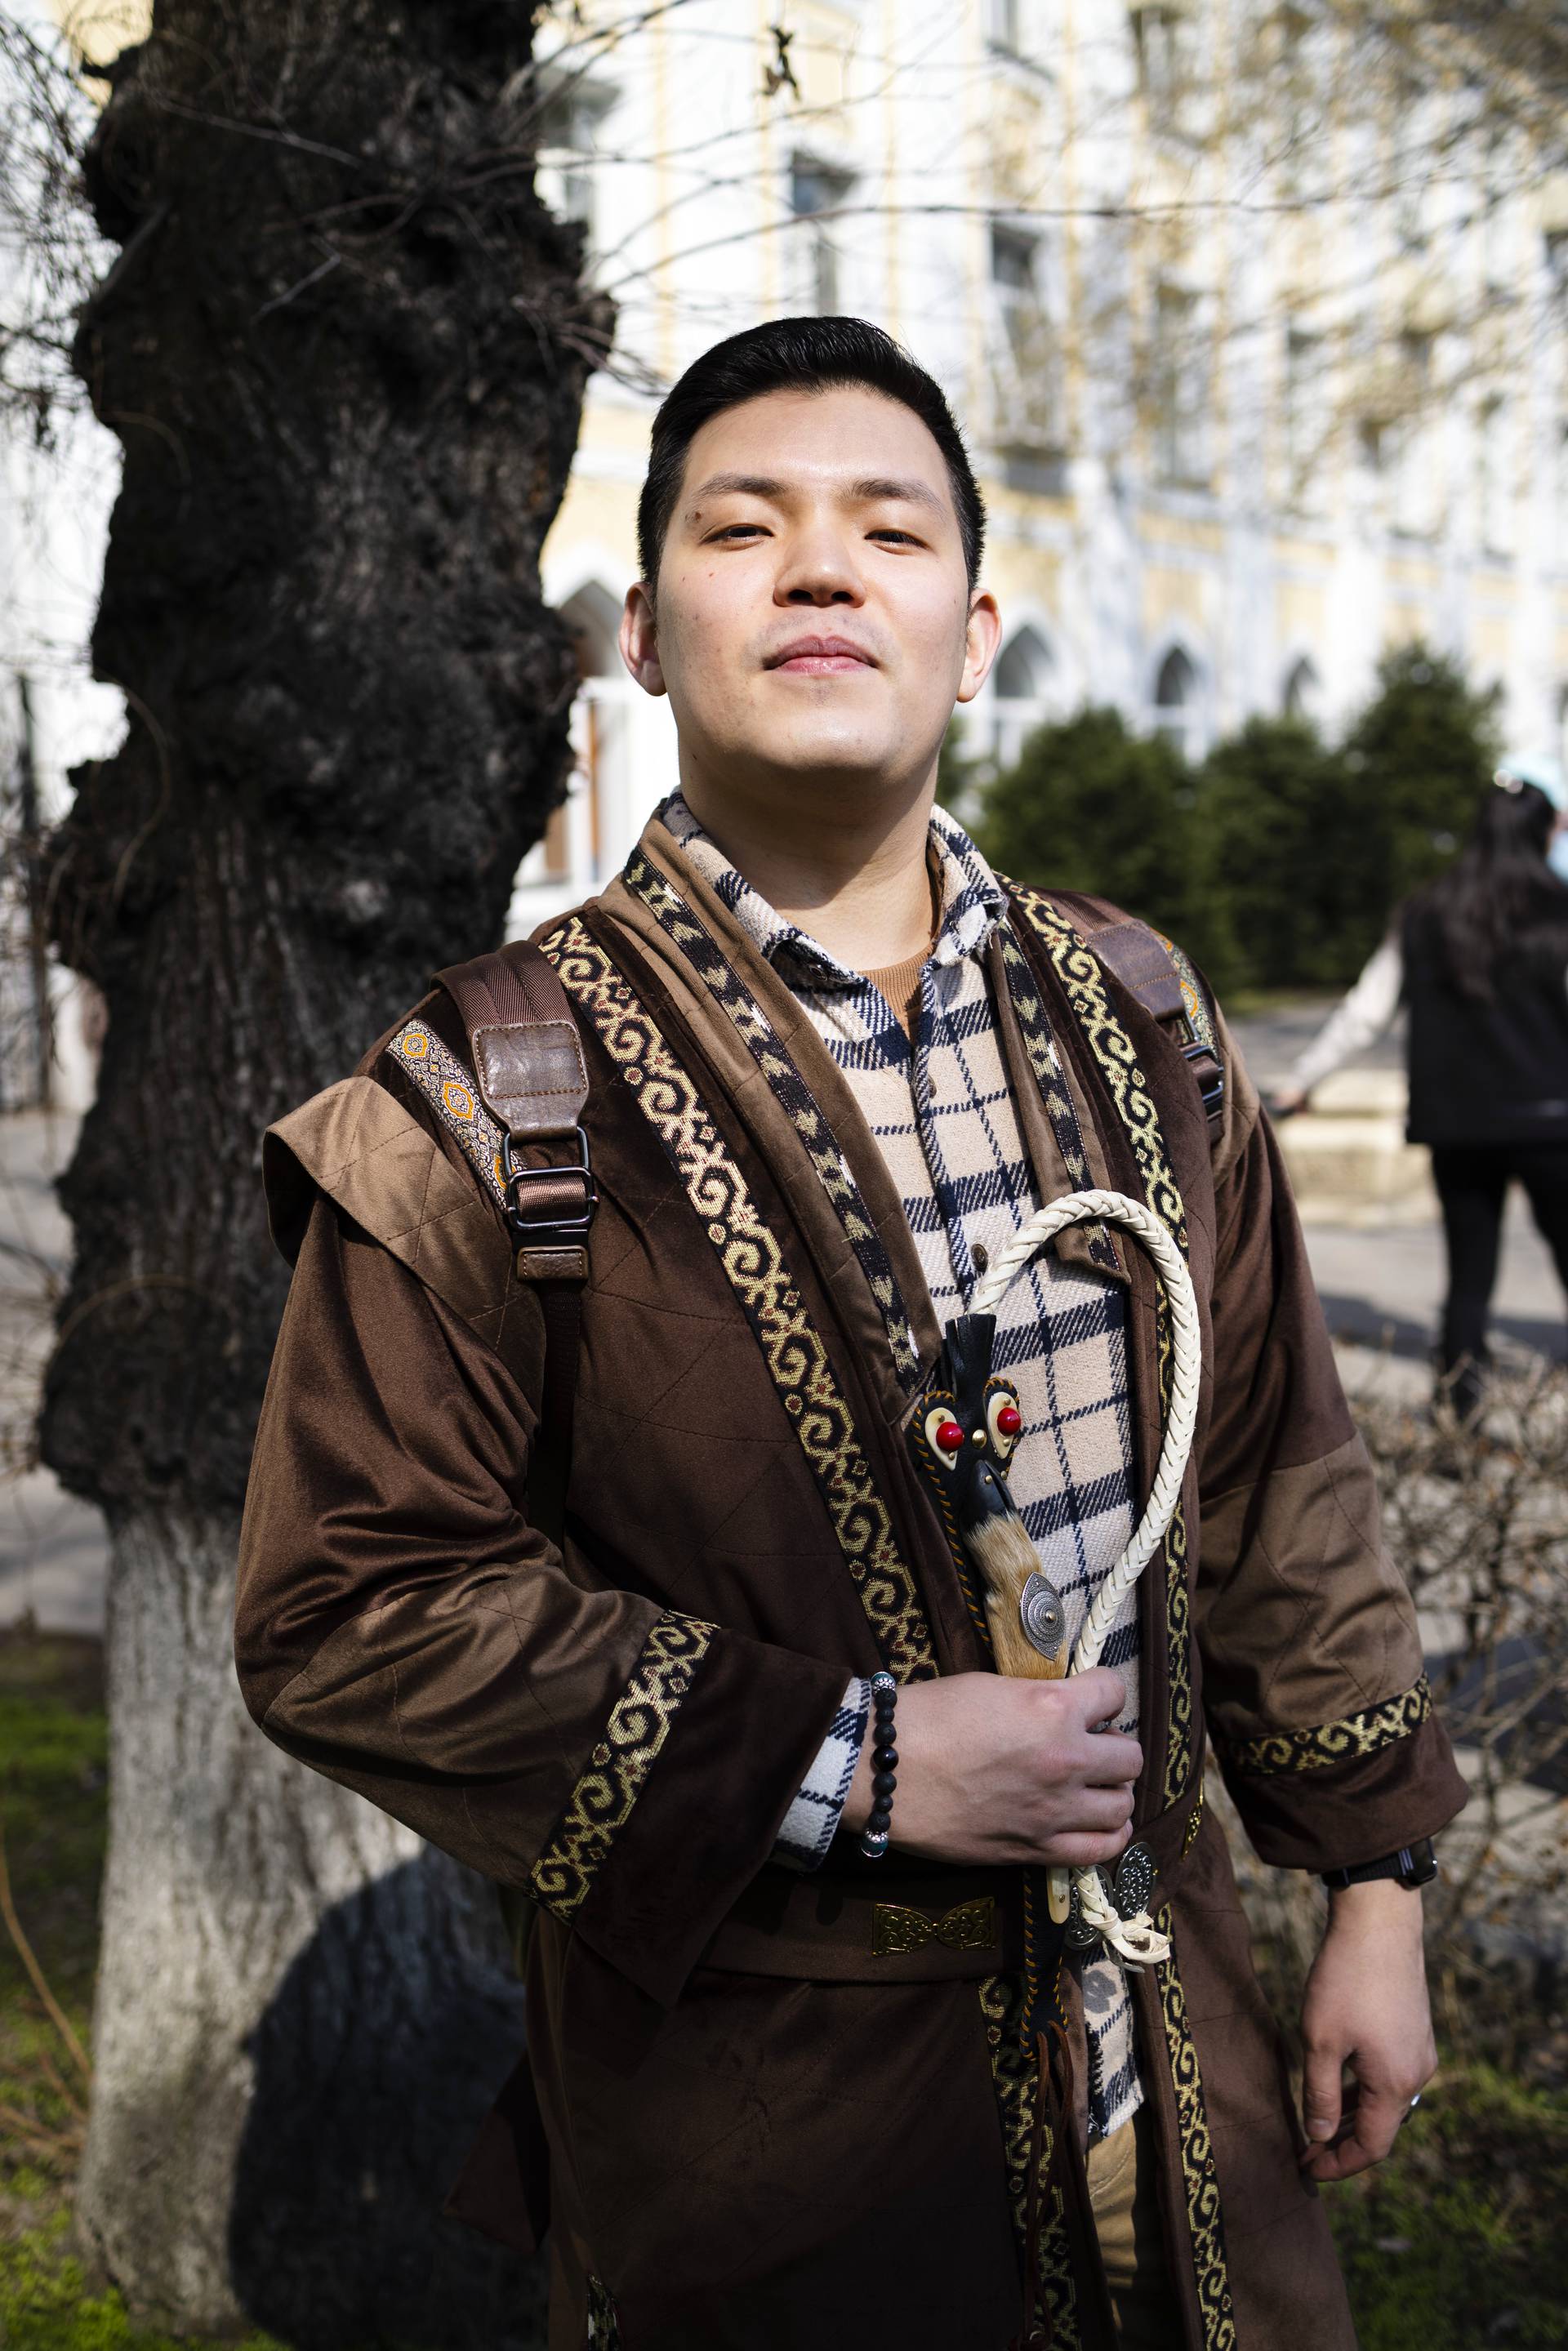 Iskander Sagimbekov ja moni muu koulutettu nuori pukeutuu nyt vaatteisiin, jotka muistuttavat perinteisiä kazakkiasuja.